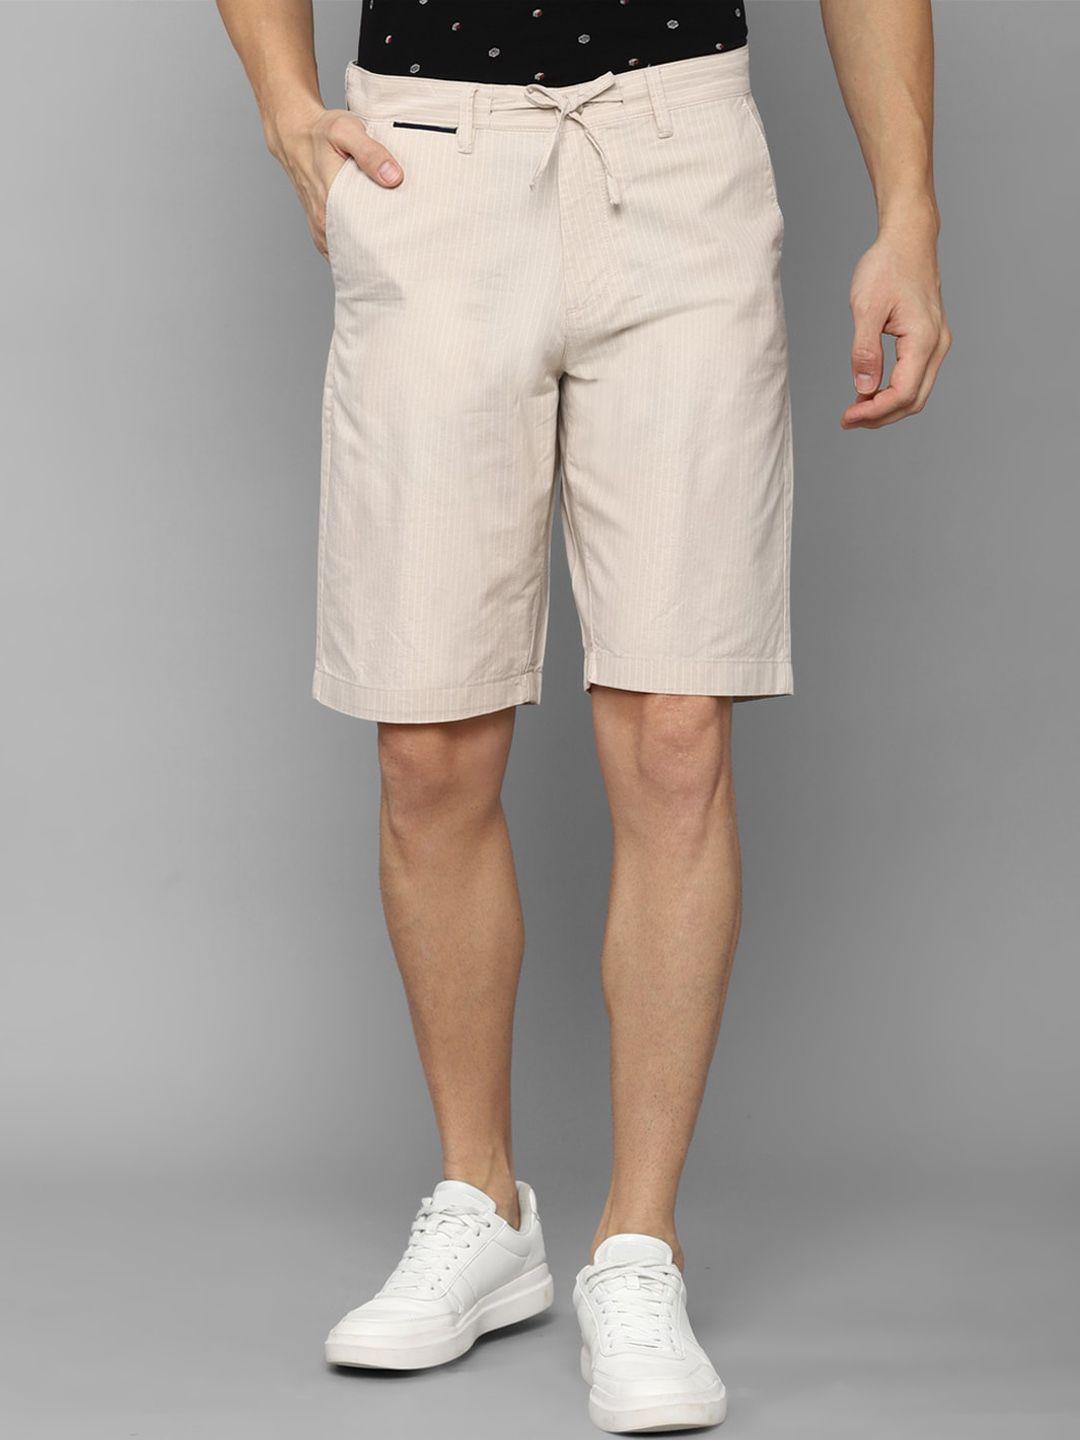 allen solly men beige cotton striped slim fit shorts